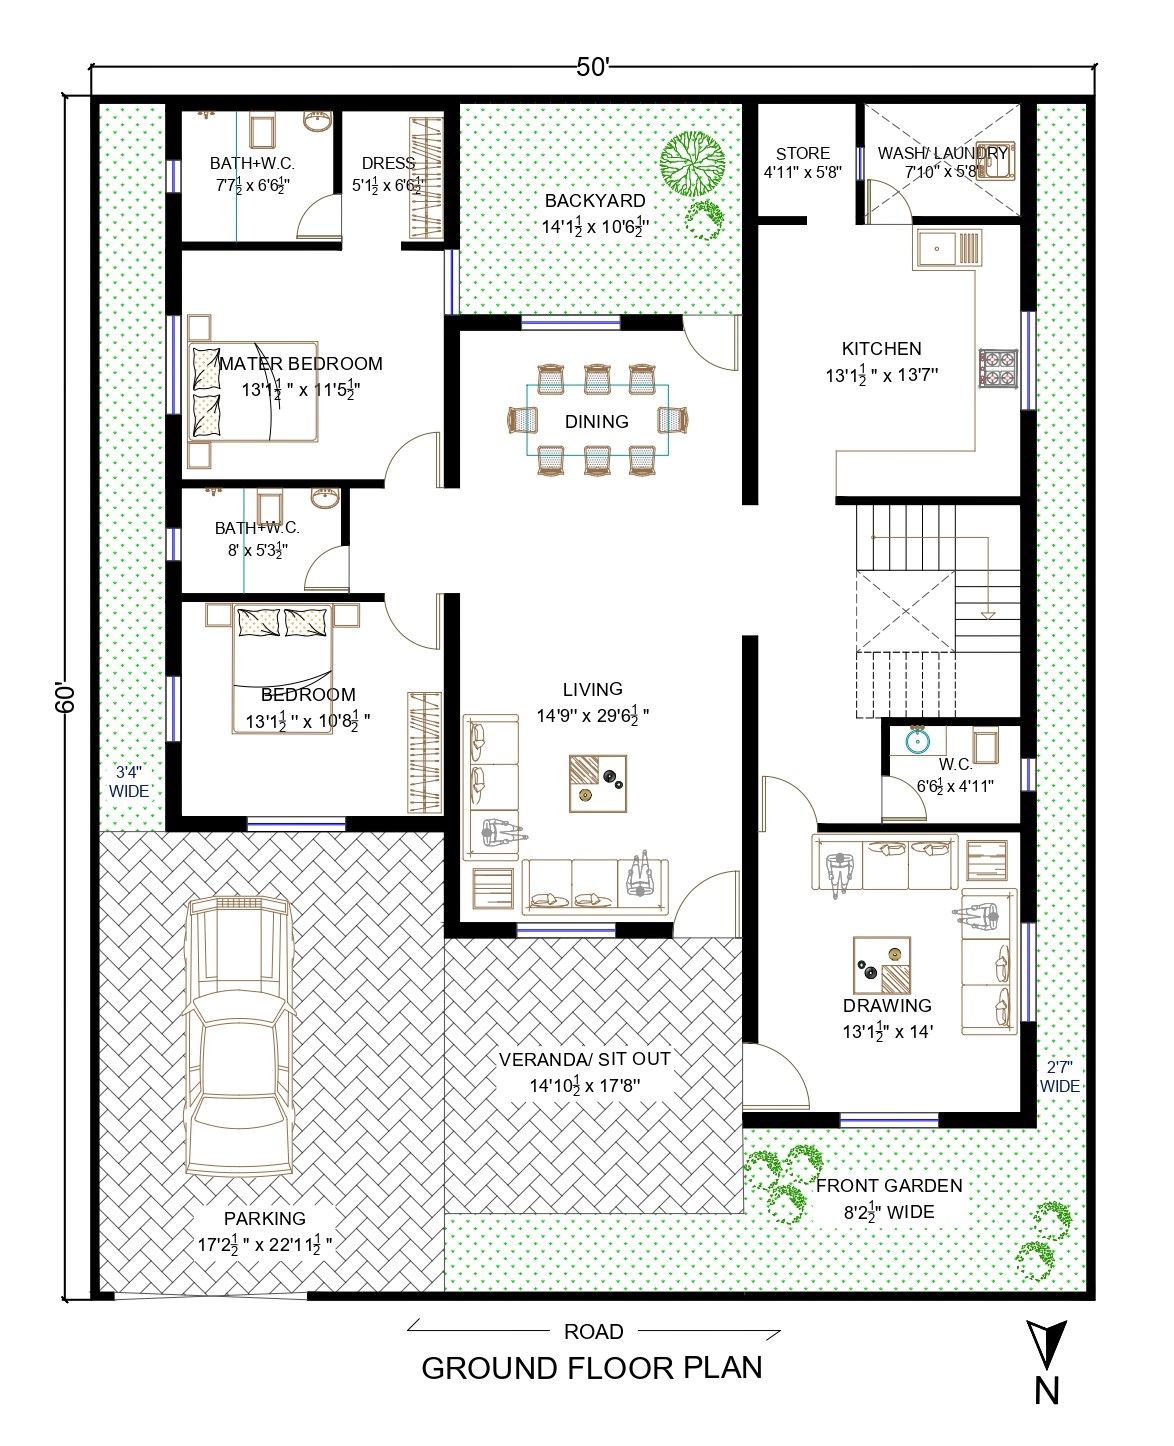 50 X 60 House Plan | 2bhk | 3000 Sq. Ft. - Architego